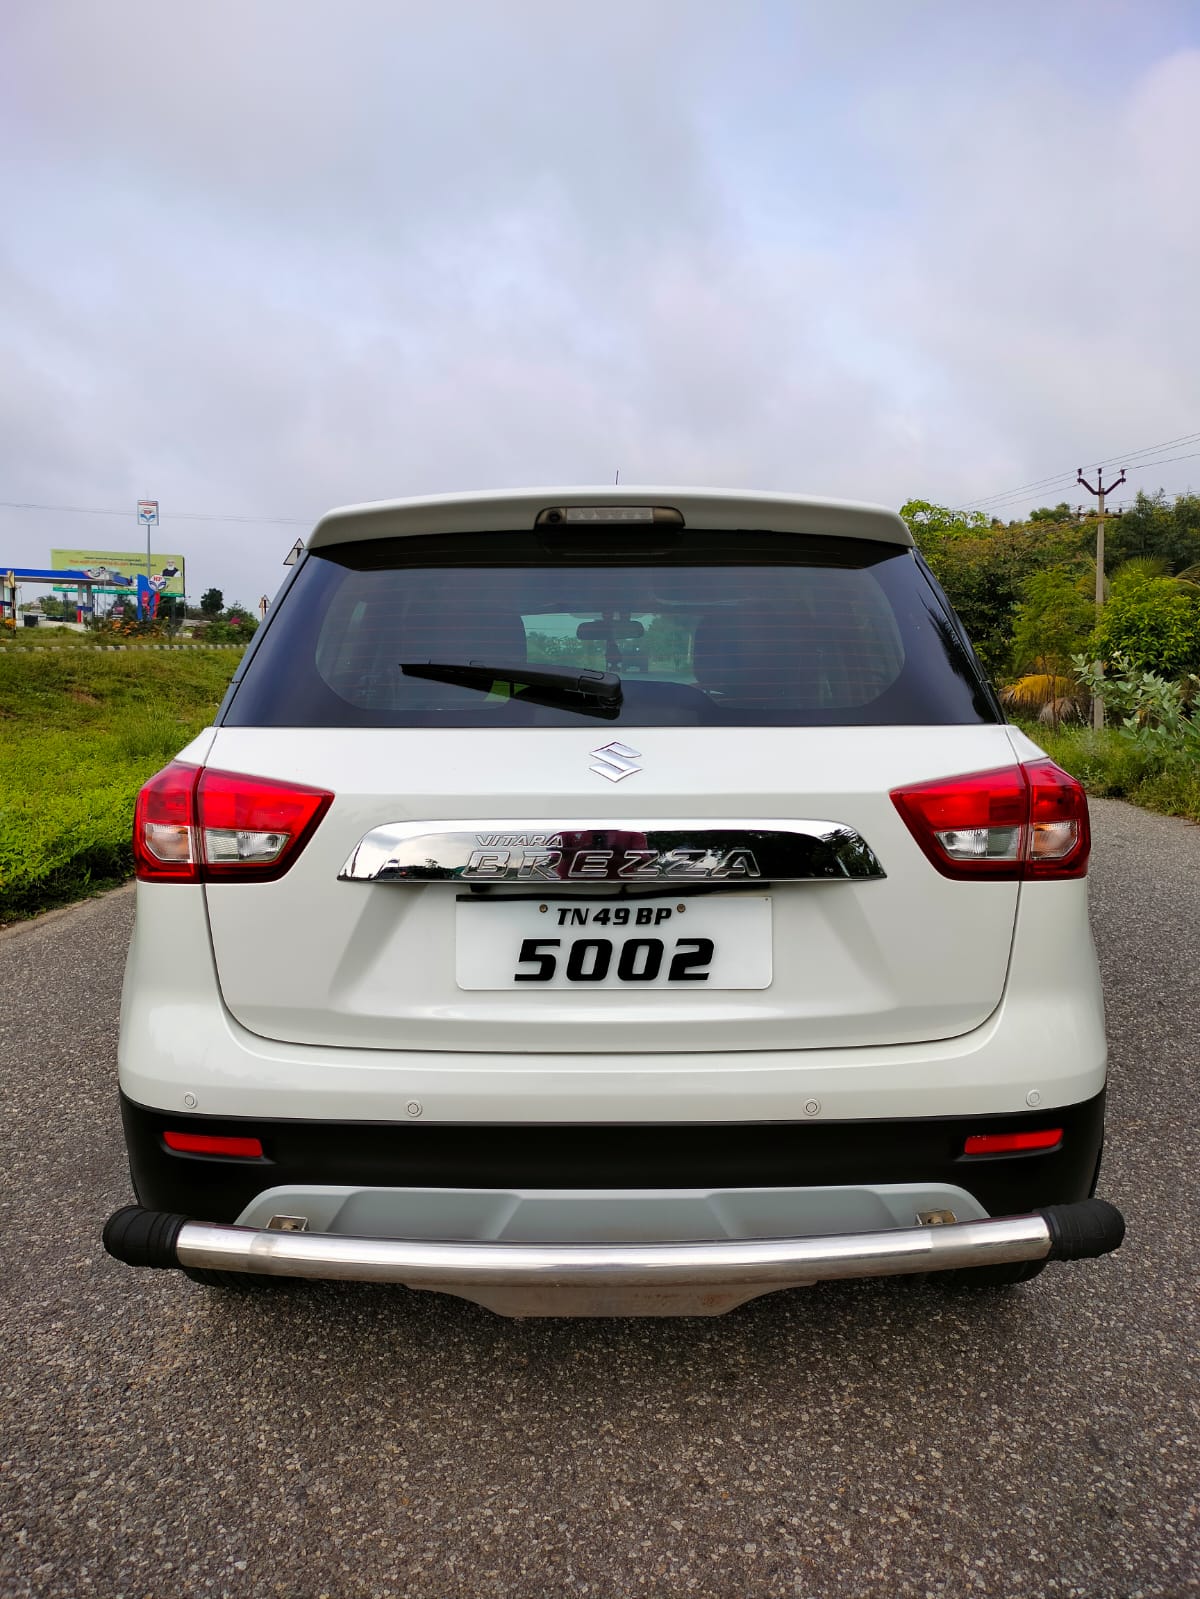 5193-for-sale-Maruthi-Suzuki-Brezza-Diesel-First-Owner-2018-TN-registered-rs-925000